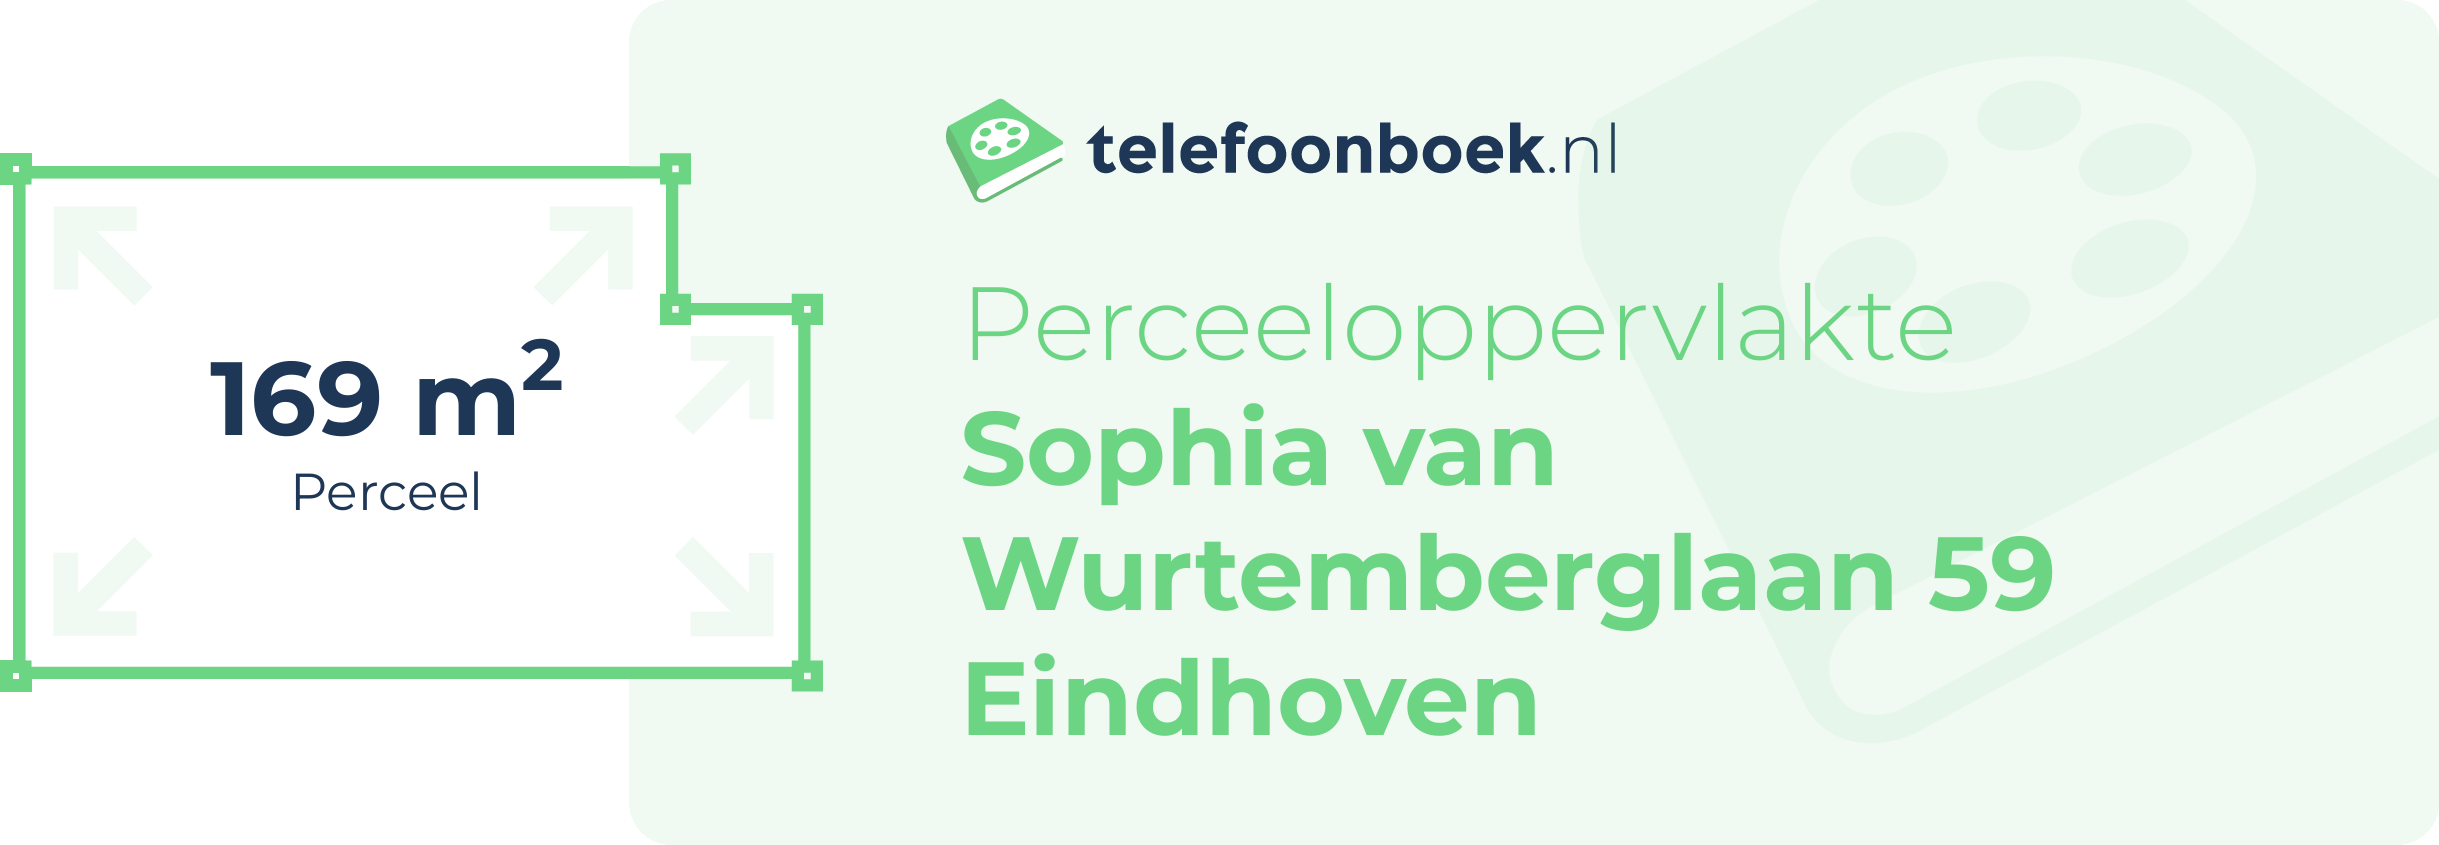 Perceeloppervlakte Sophia Van Wurtemberglaan 59 Eindhoven